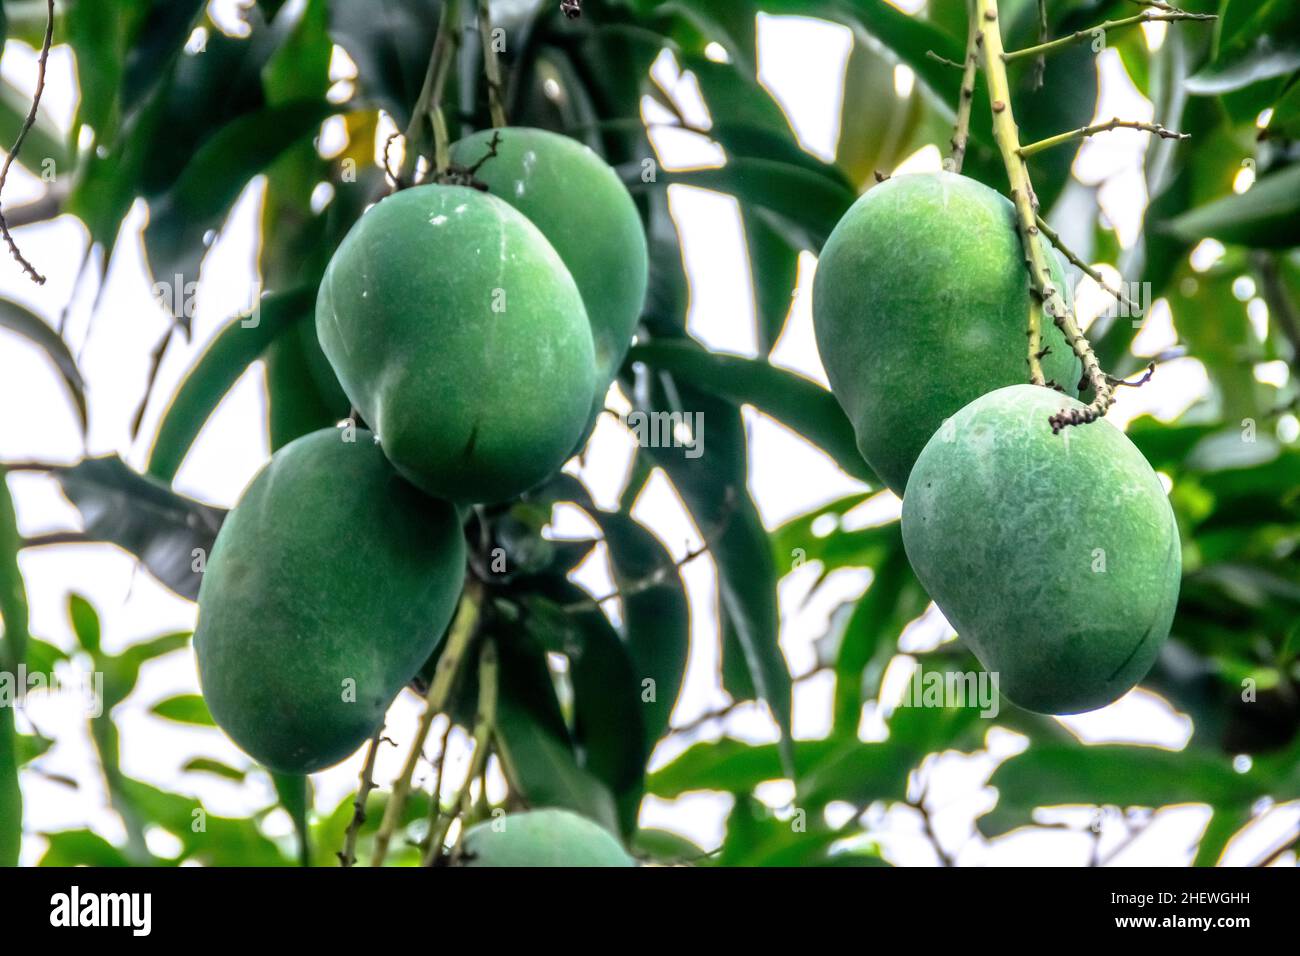 Ein Bund frischer grüner unreifer Mango auf dem Baum mit grünen Blättern, die auf der Farm hängen. Geeignet für gesunde, Natur und leckere Saftgetränk Wallp Stockfoto